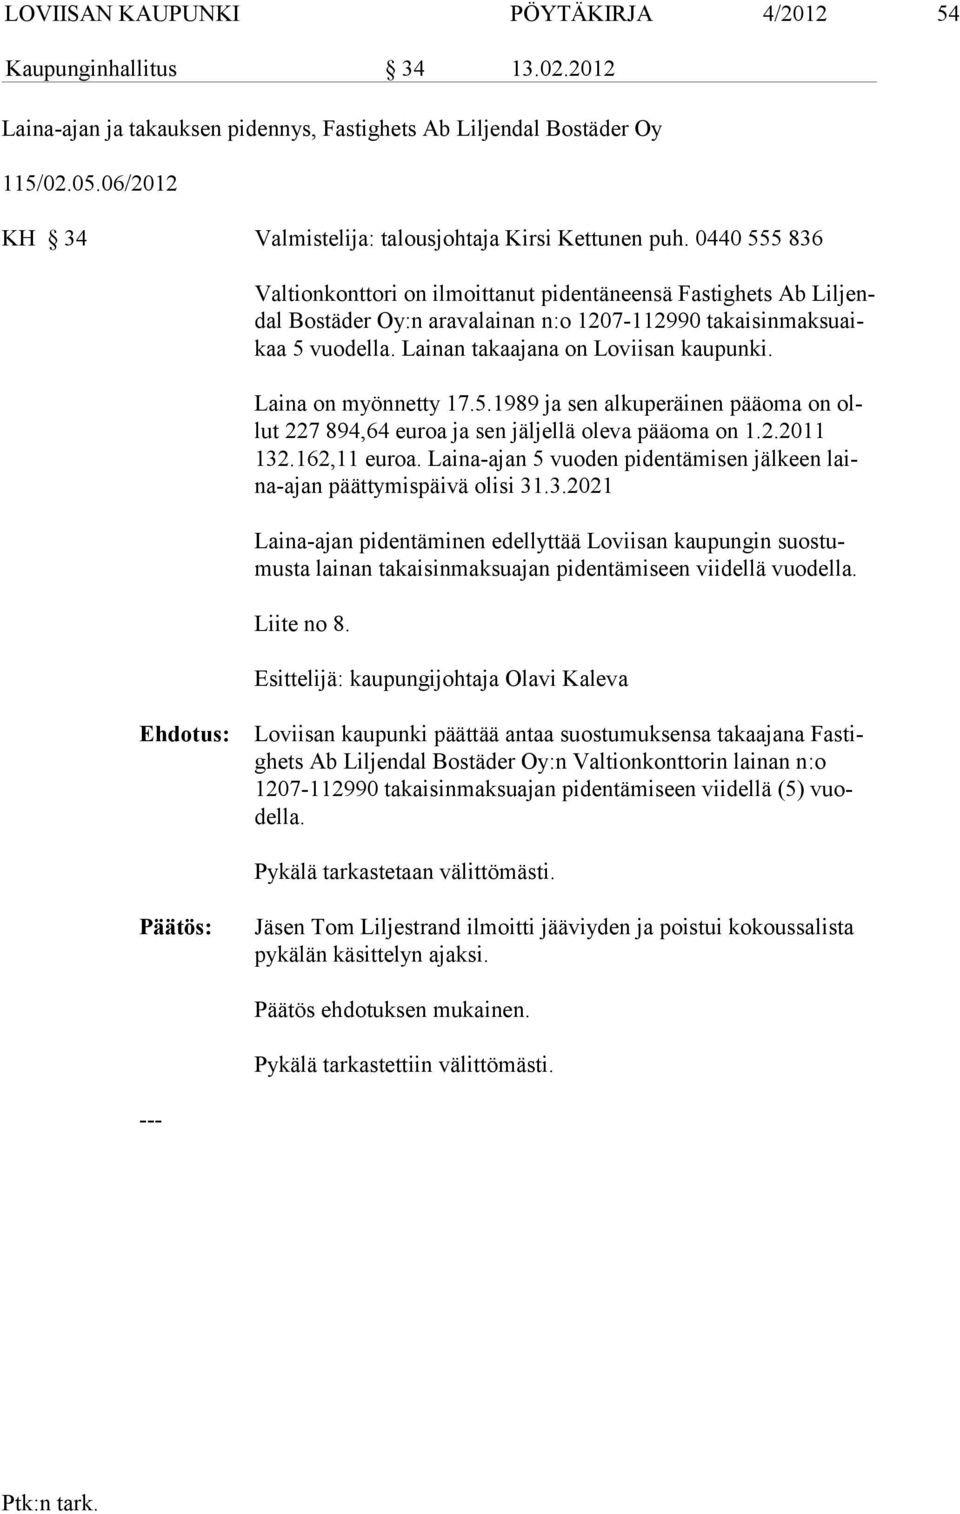 0440 555 836 Valtionkonttori on ilmoittanut pidentäneensä Fastighets Ab Liljendal Bostä der Oy:n aravalainan n:o 1207-112990 takaisinmaksuaikaa 5 vuodella. Lai nan takaajana on Loviisan kaupunki.